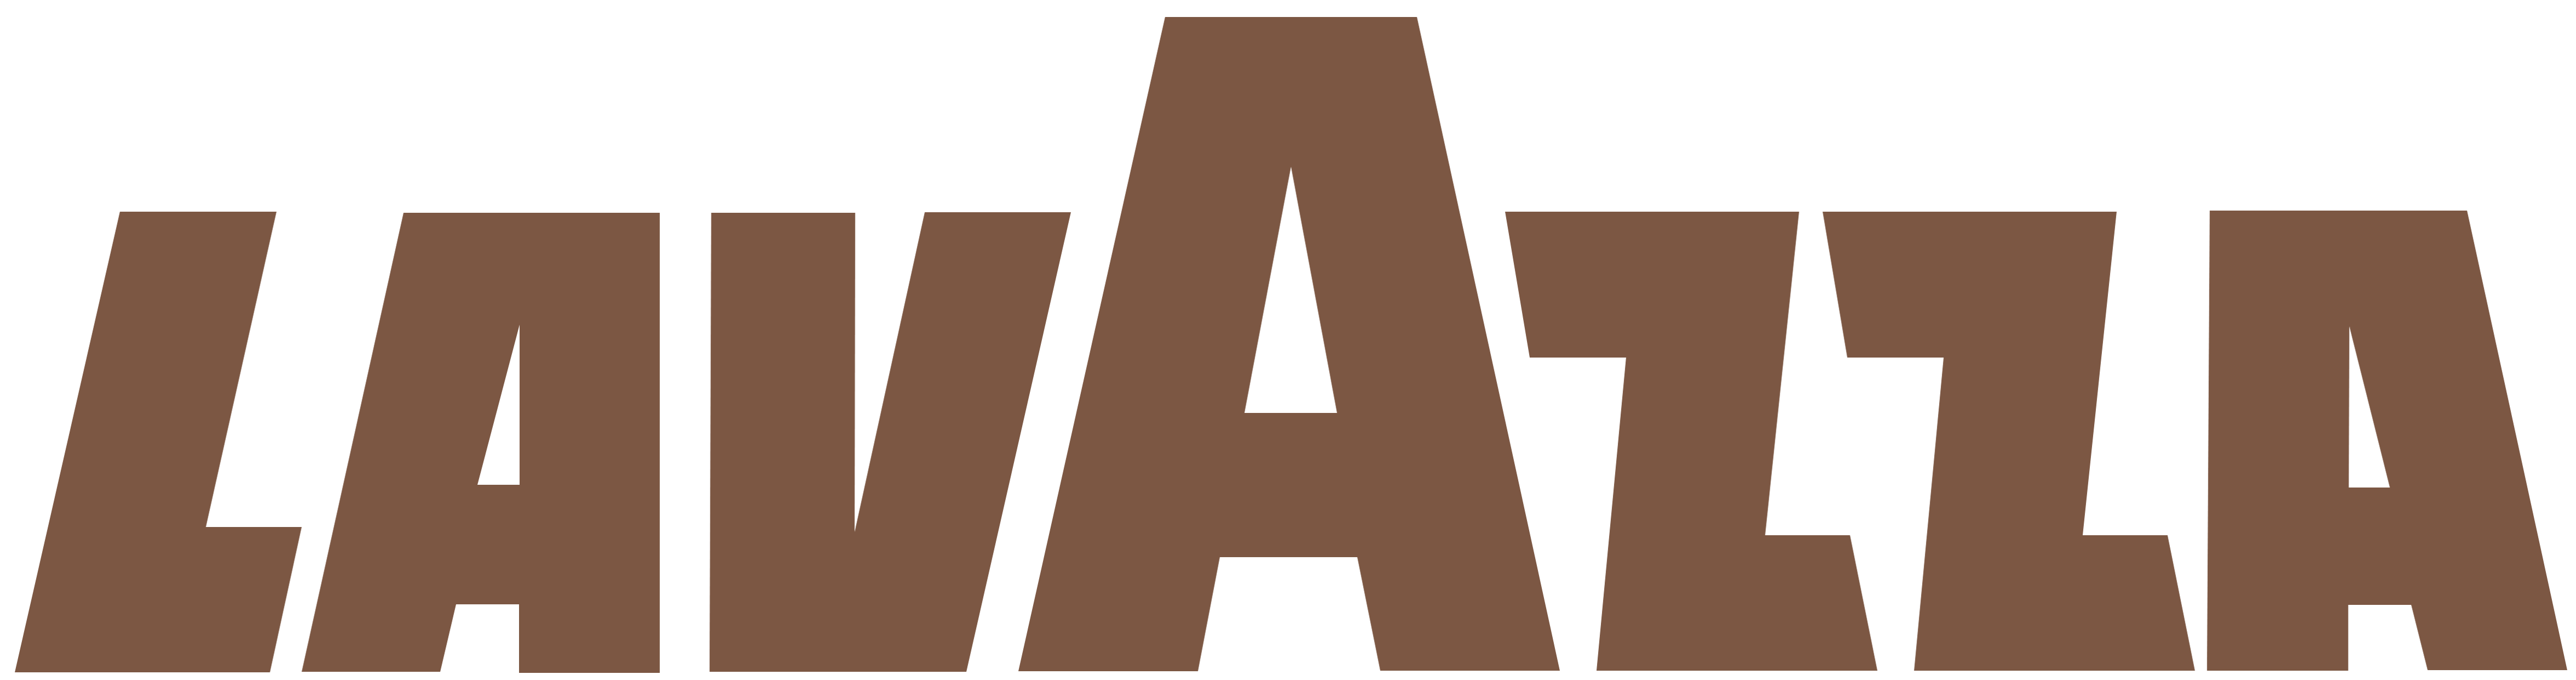 File:Lavazza Logo.png.